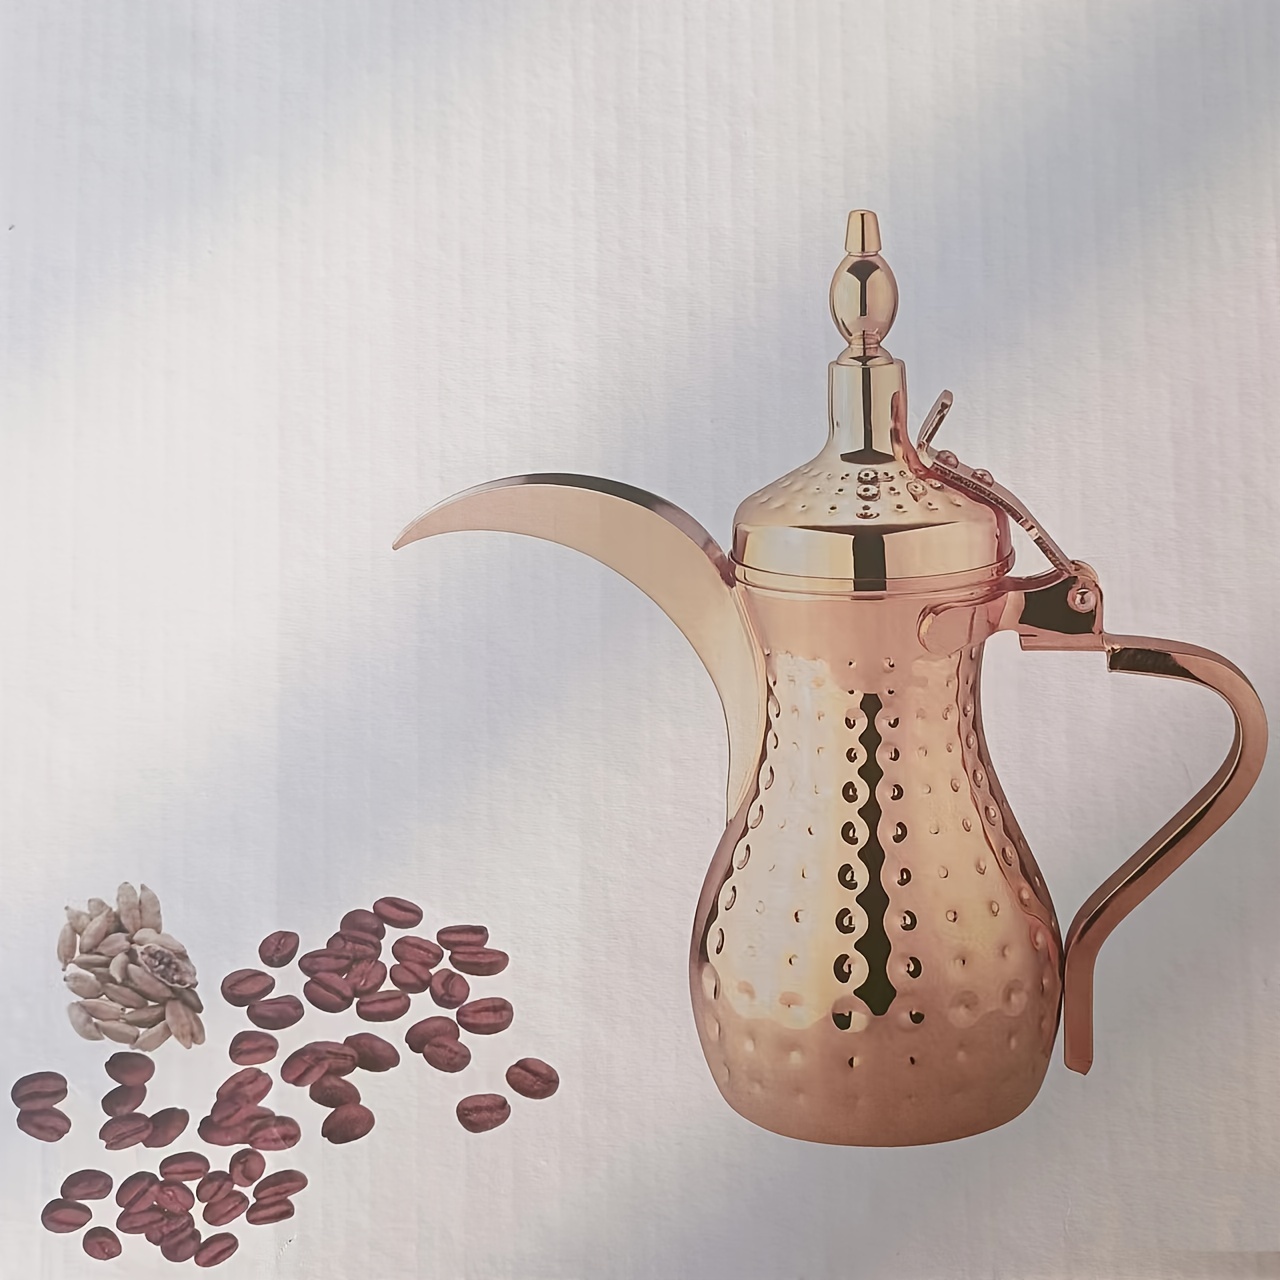 Théière marocaine de 800 ml théière arabe fabriquée en acier